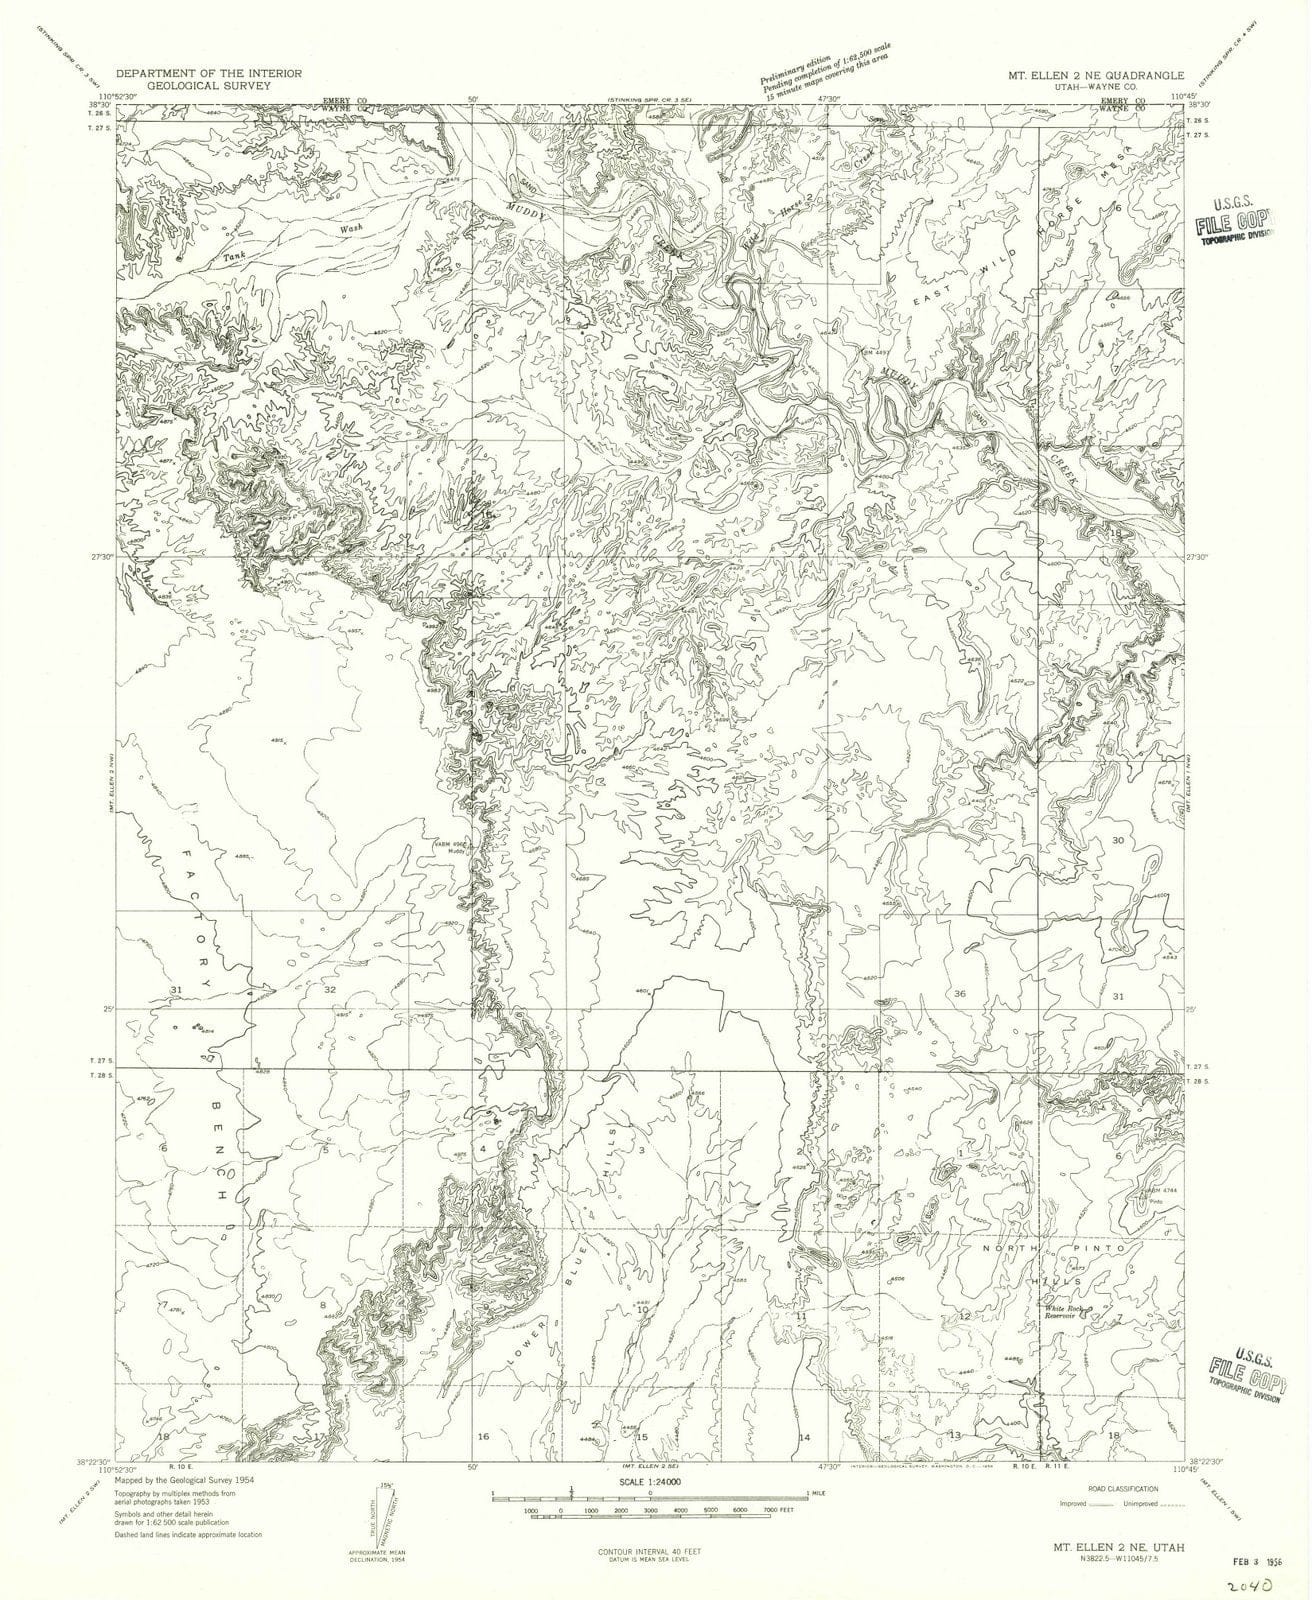 1954 Mt. Ellen 2, UT - Utah - USGS Topographic Map